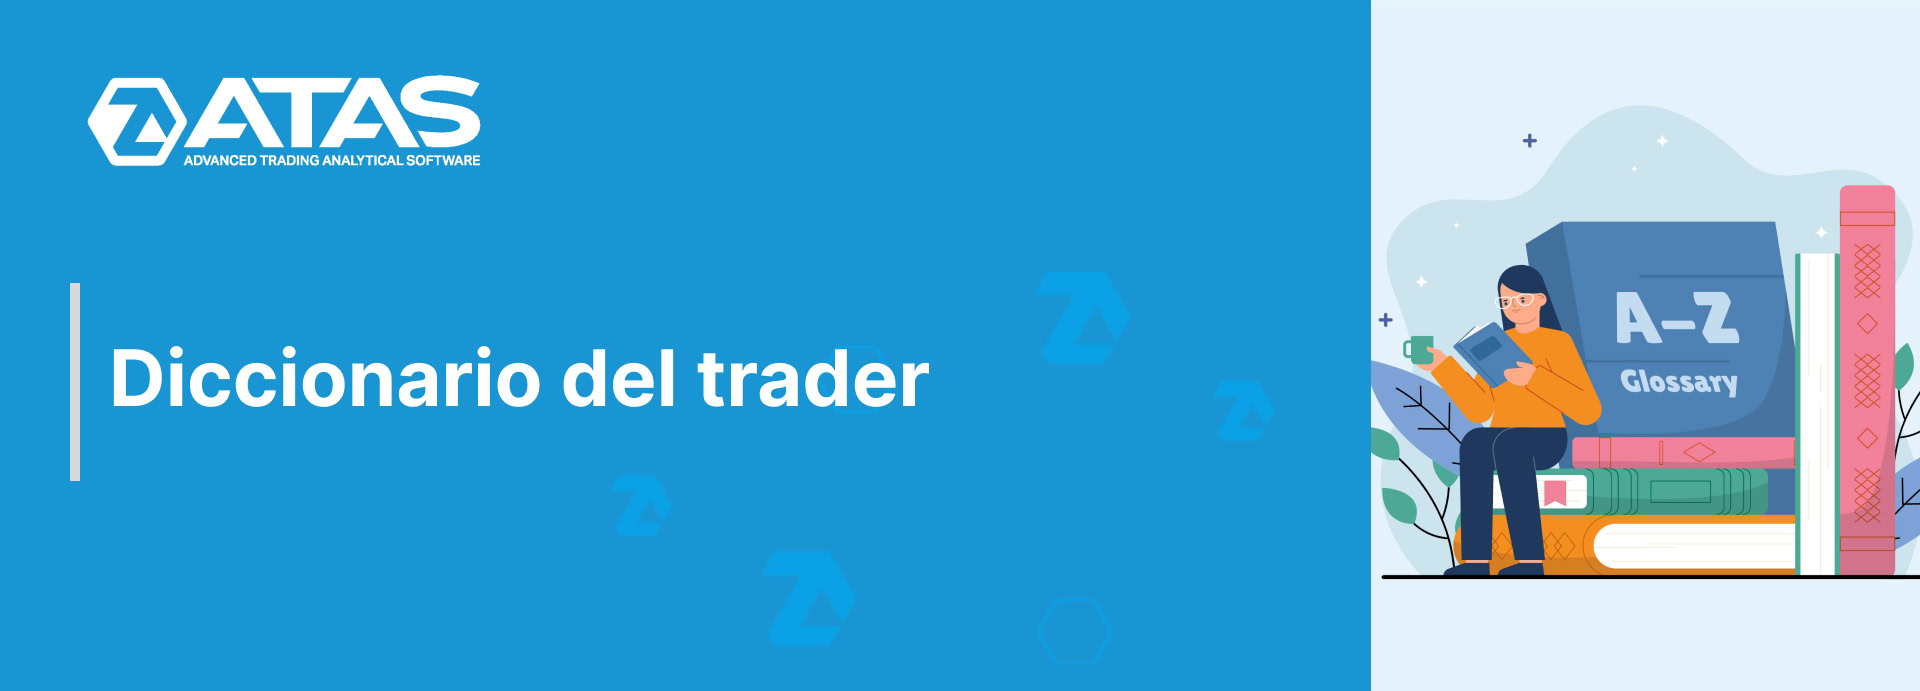 Diccionario del trader